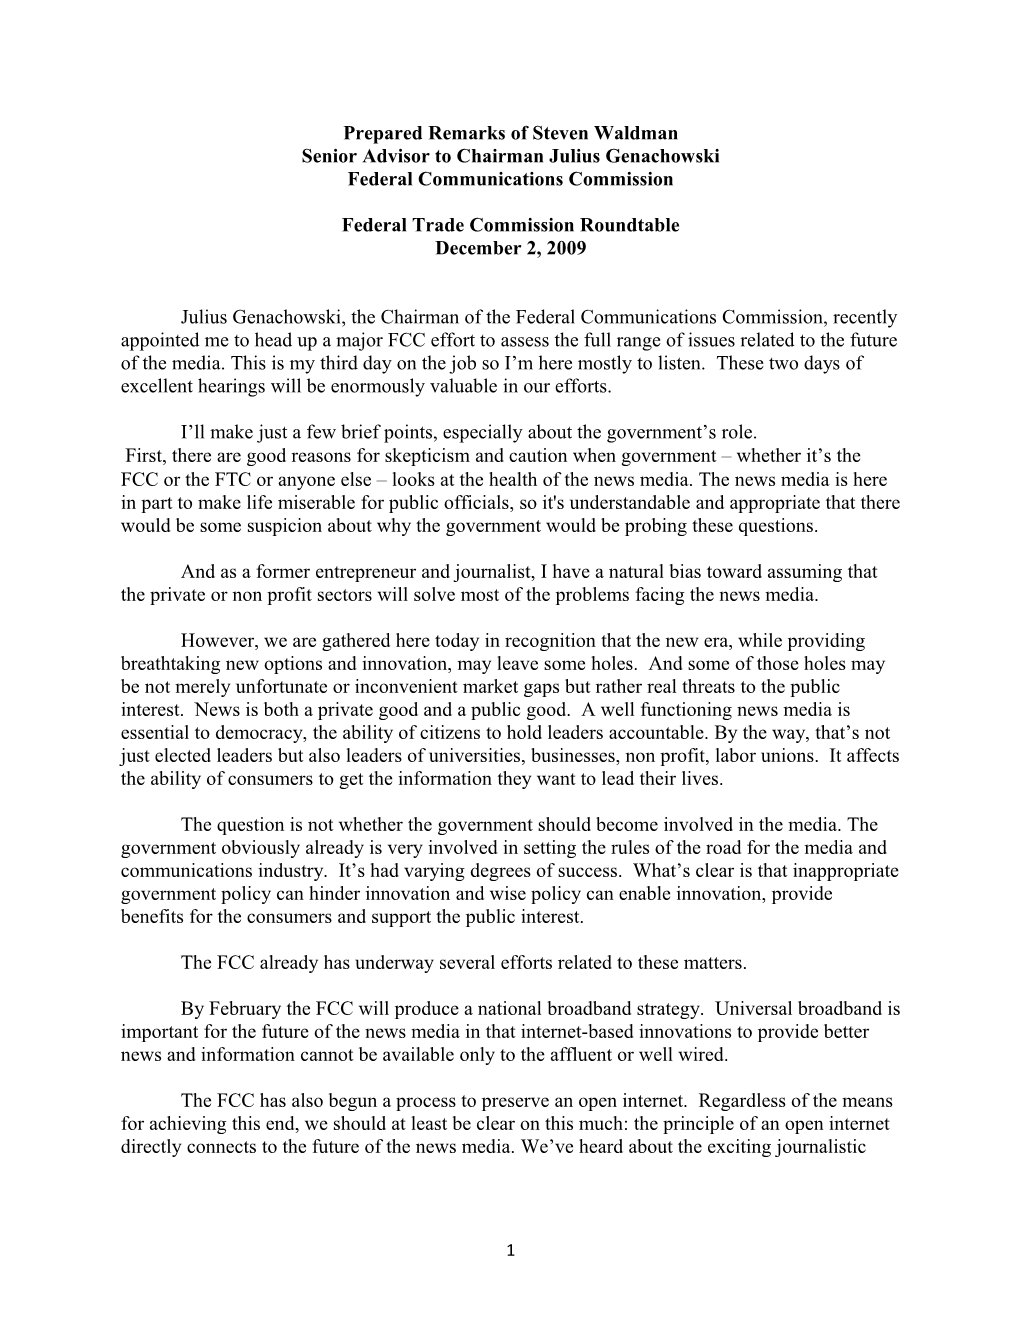 Statement of Steven Waldman, Senior Advisor to the Chairman